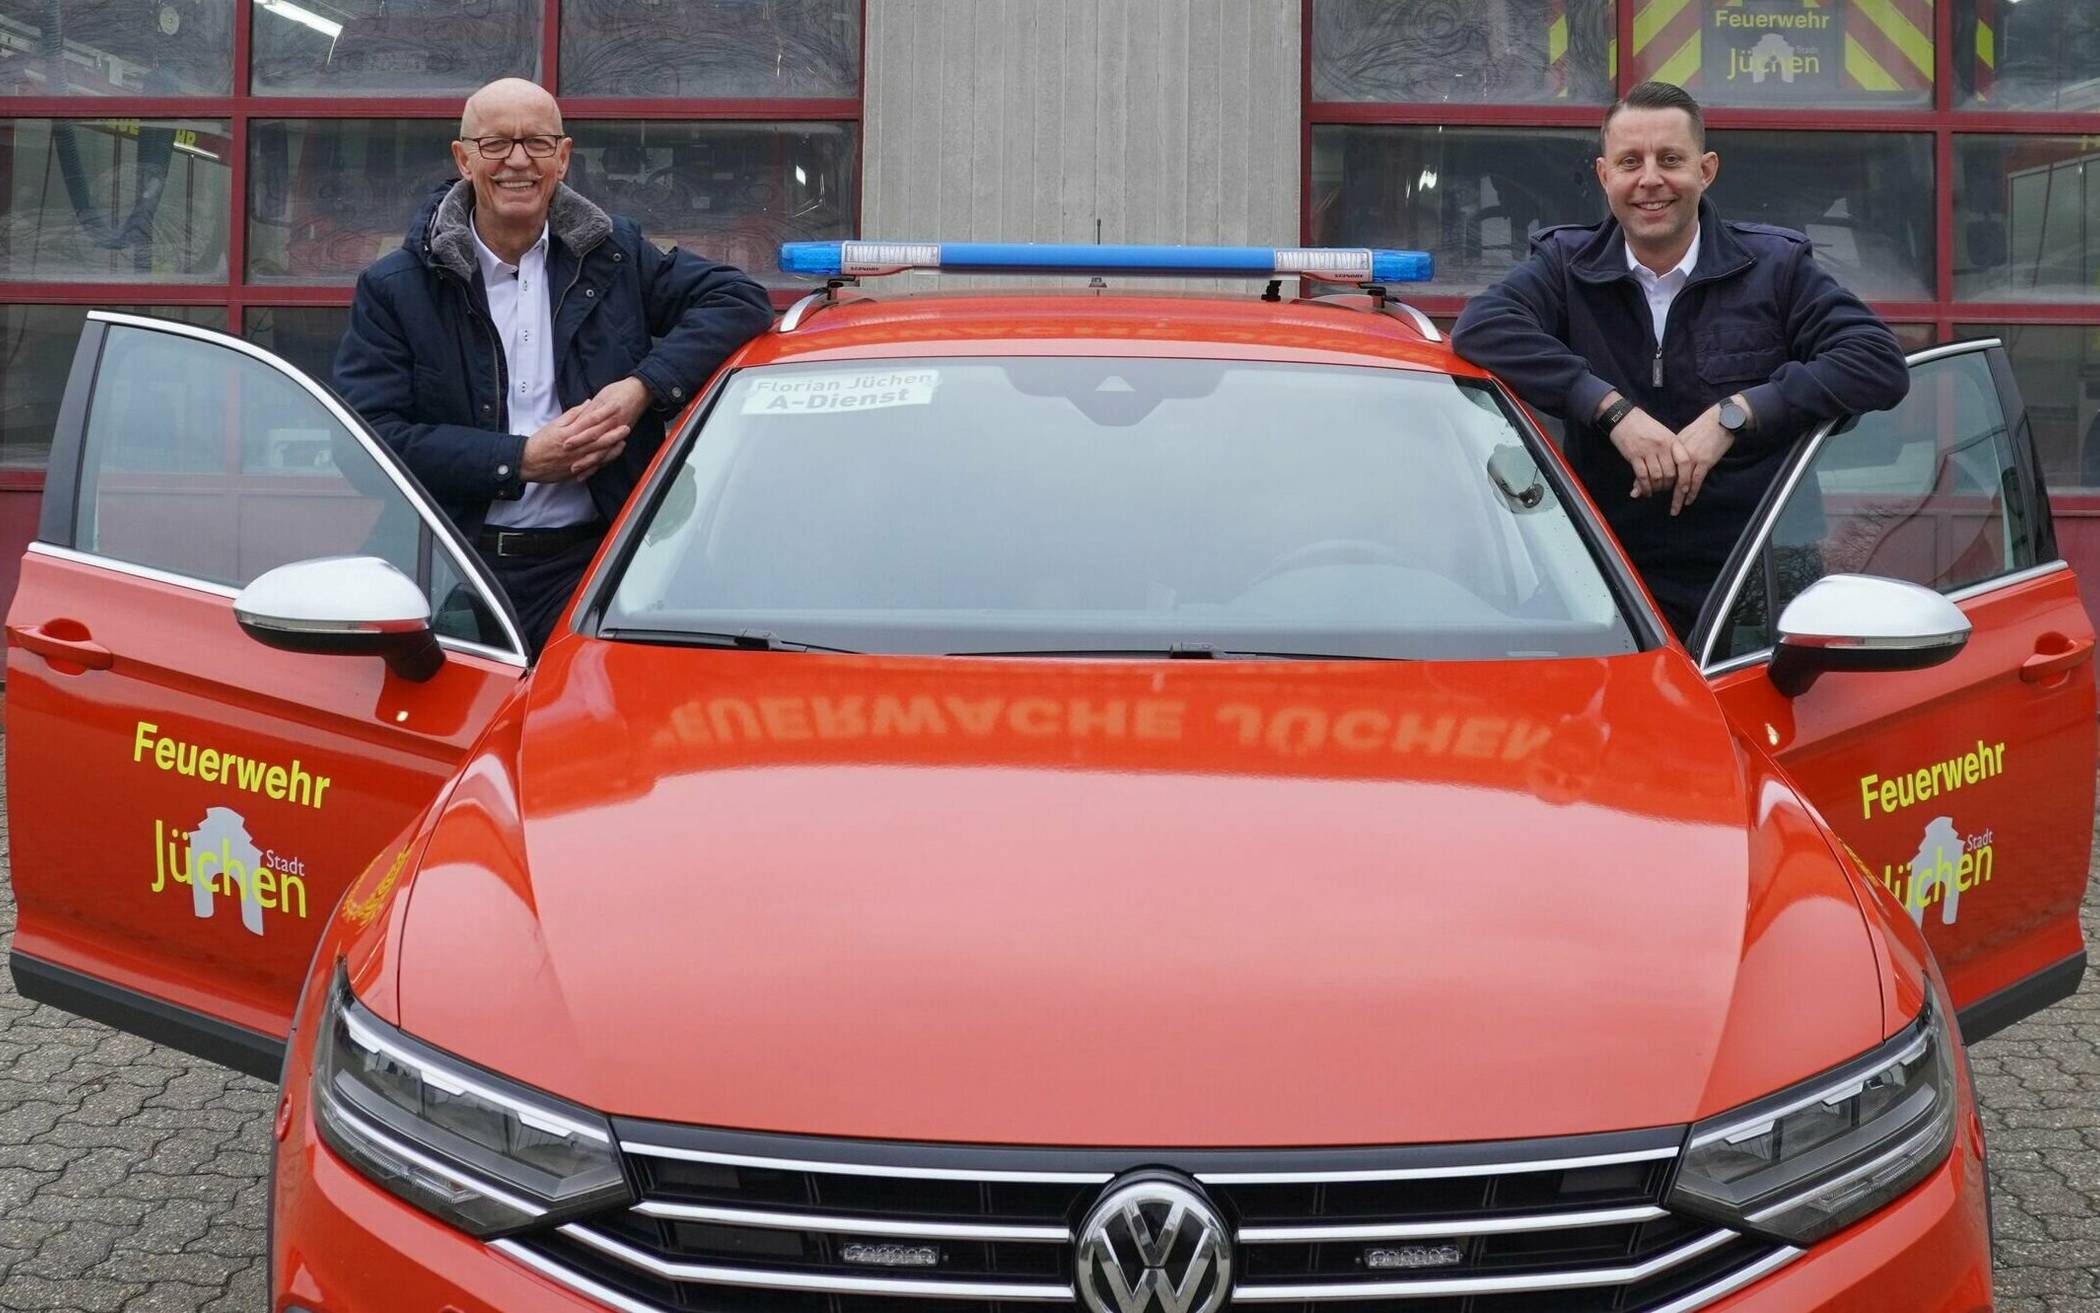  Bürgermeister Harald Zillikens (l.) und Feuerwehr-Chef Heinz-Dieter Abels freuen sich über das neue Kommandofahrzeug.  